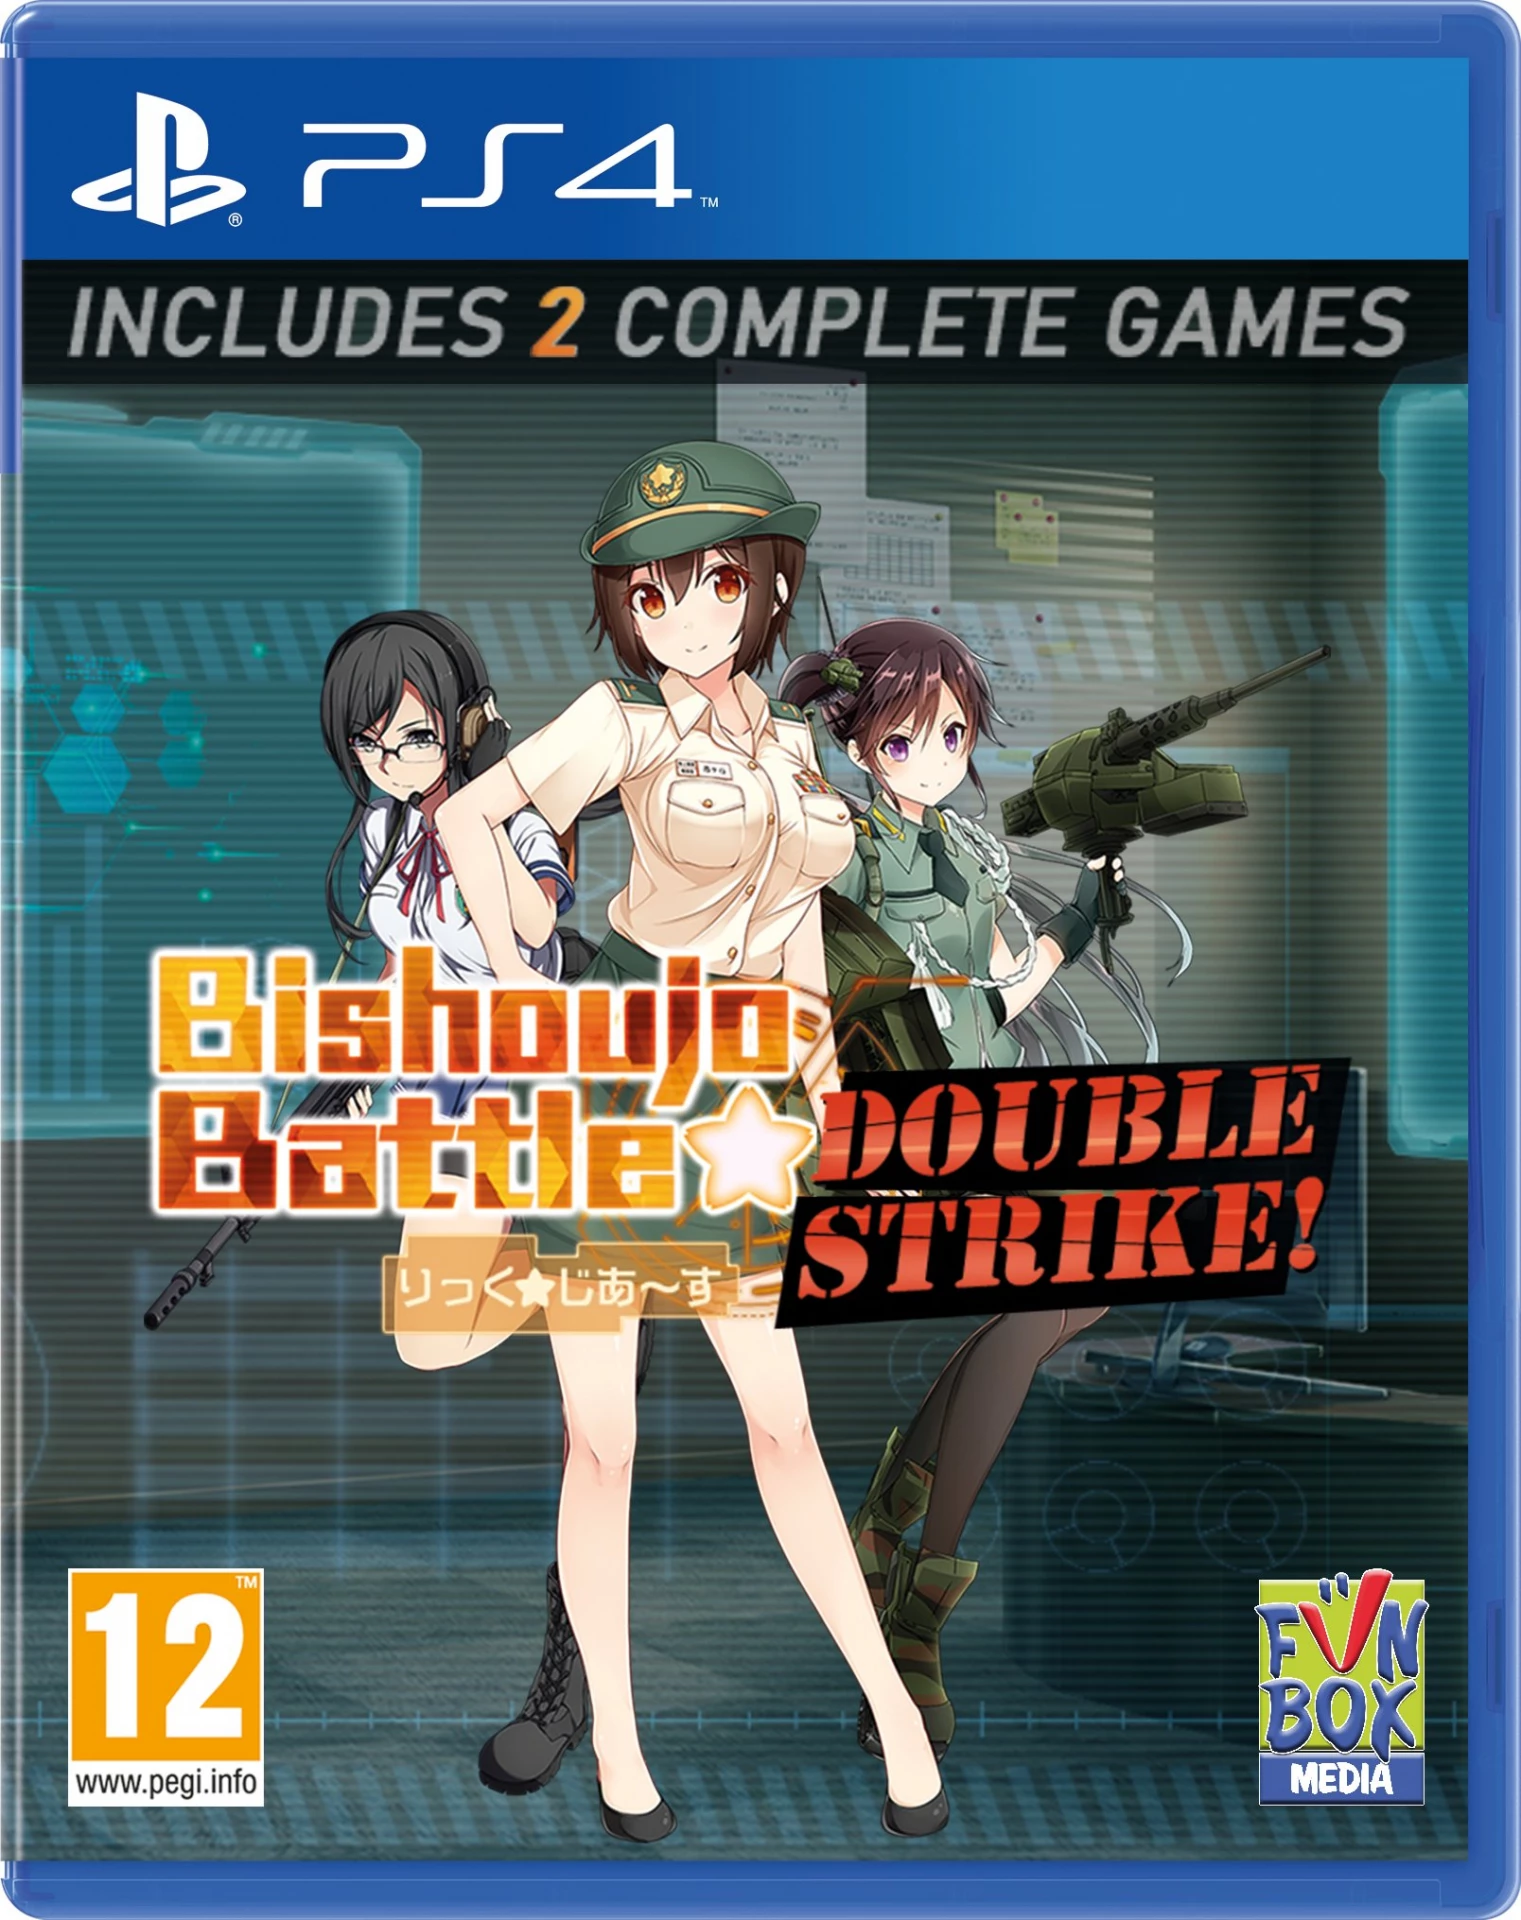 Bishoujo Battle: Double Strike! (PS4), Funbox media